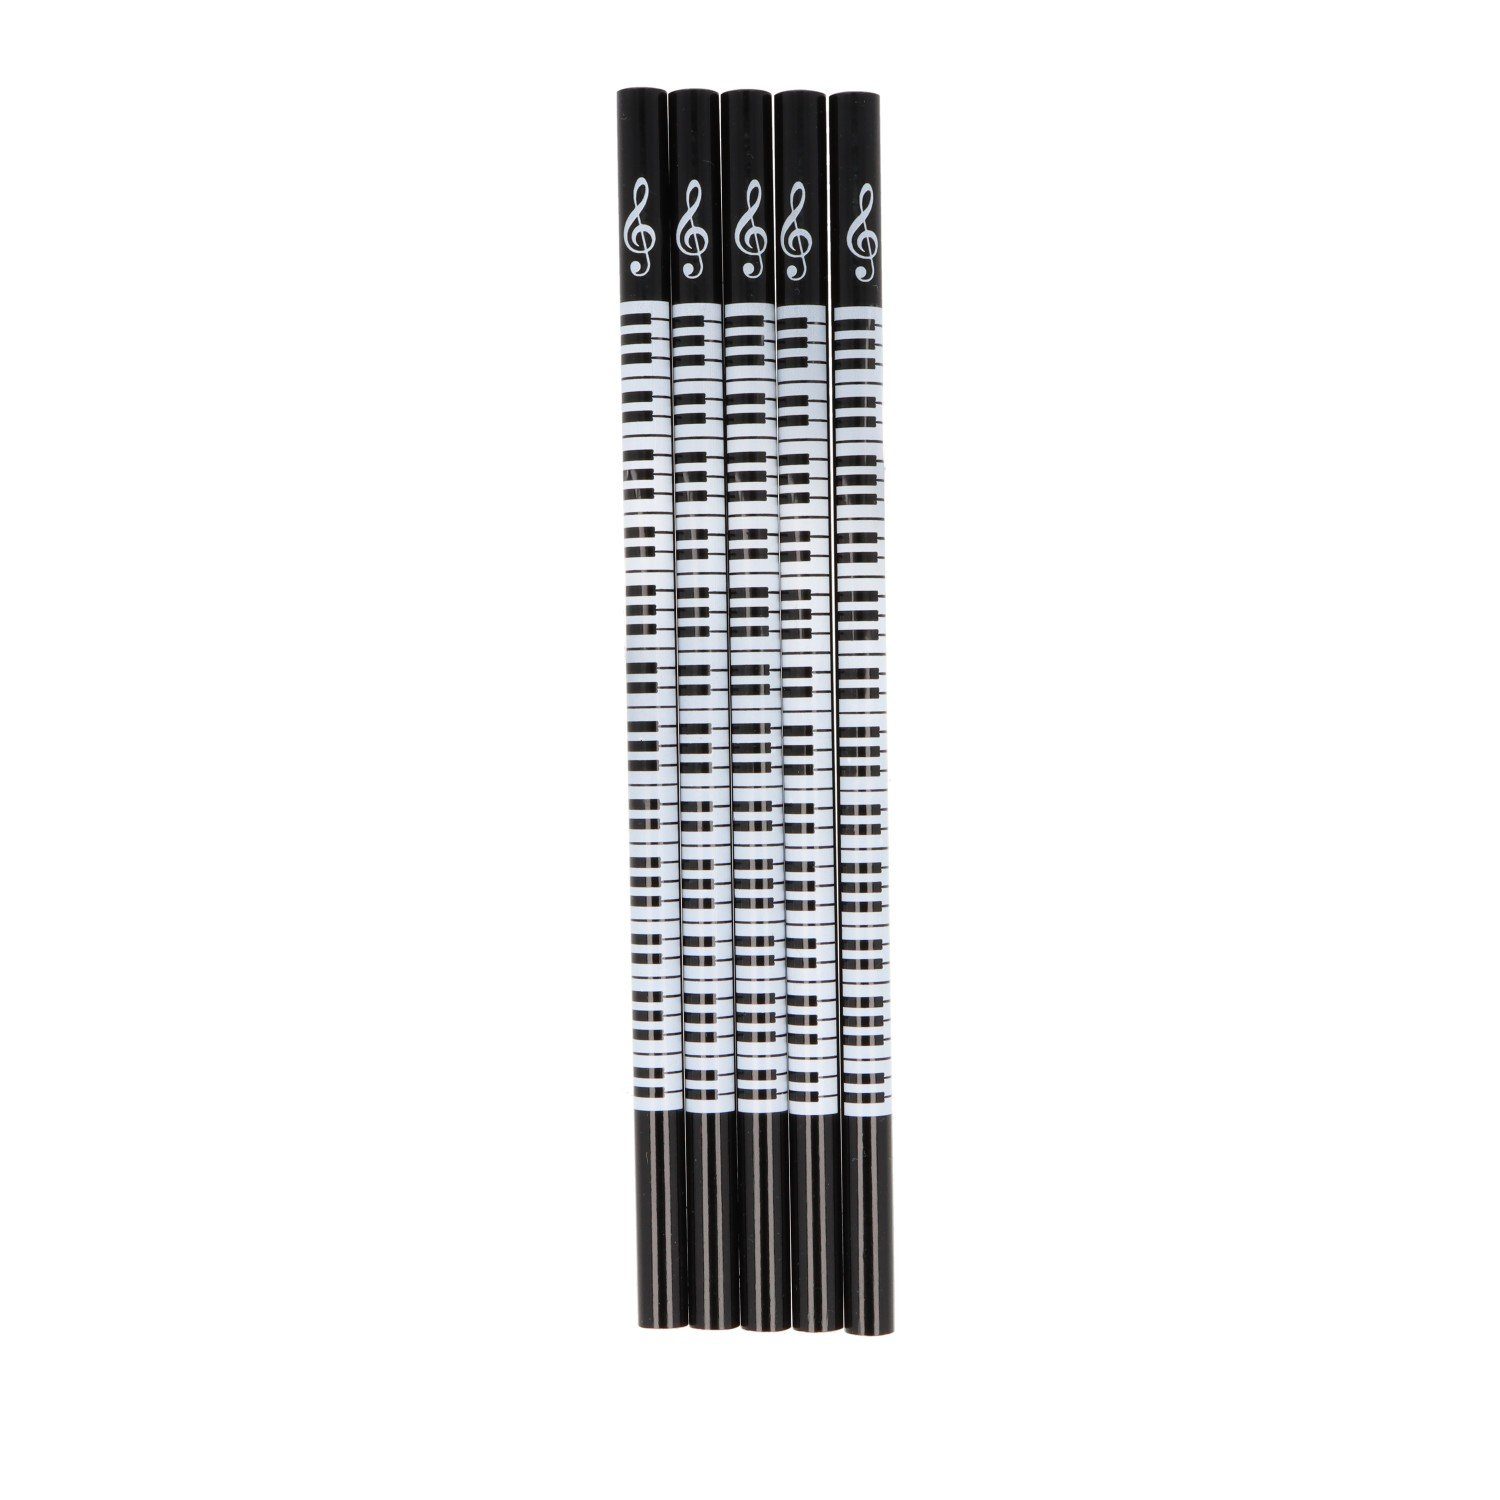 Musikboutique Bleistift, mit Keyboard und Notenschlüssel Motiv, Farbe schwarz, 5 Stück